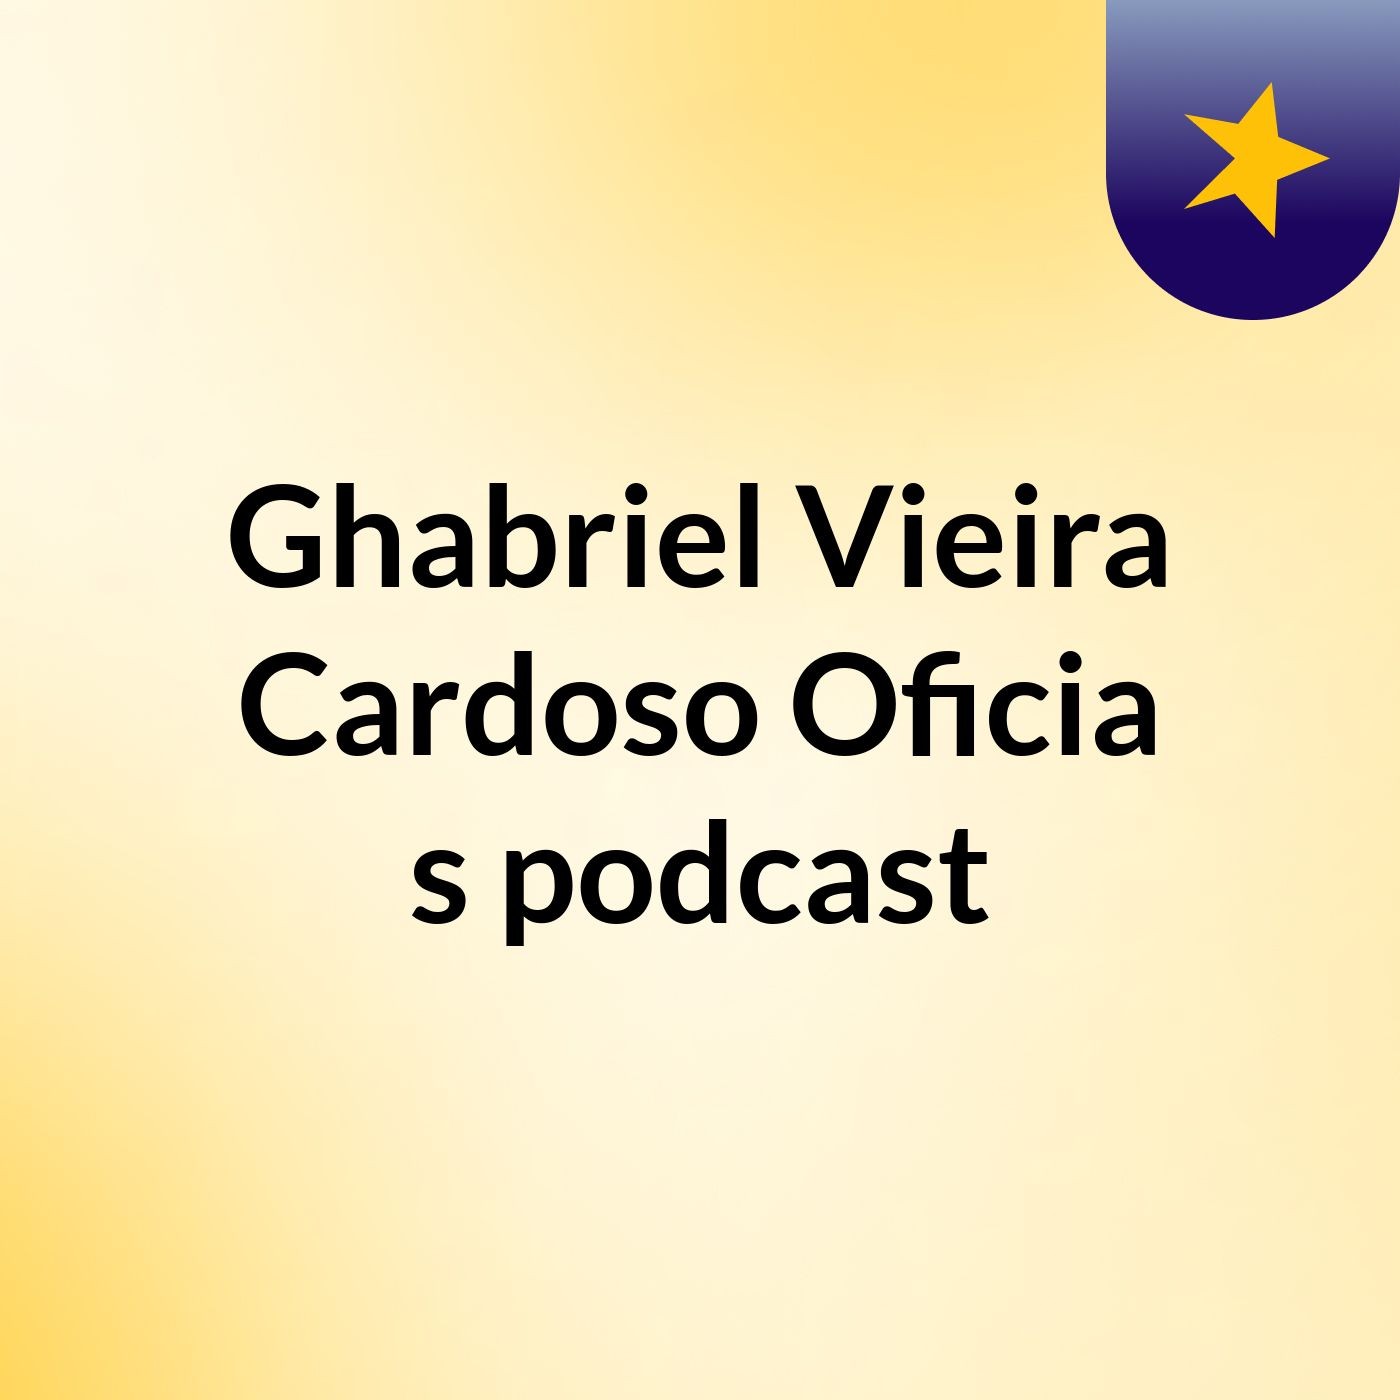 Ghabriel Vieira Cardoso Oficia's podcast